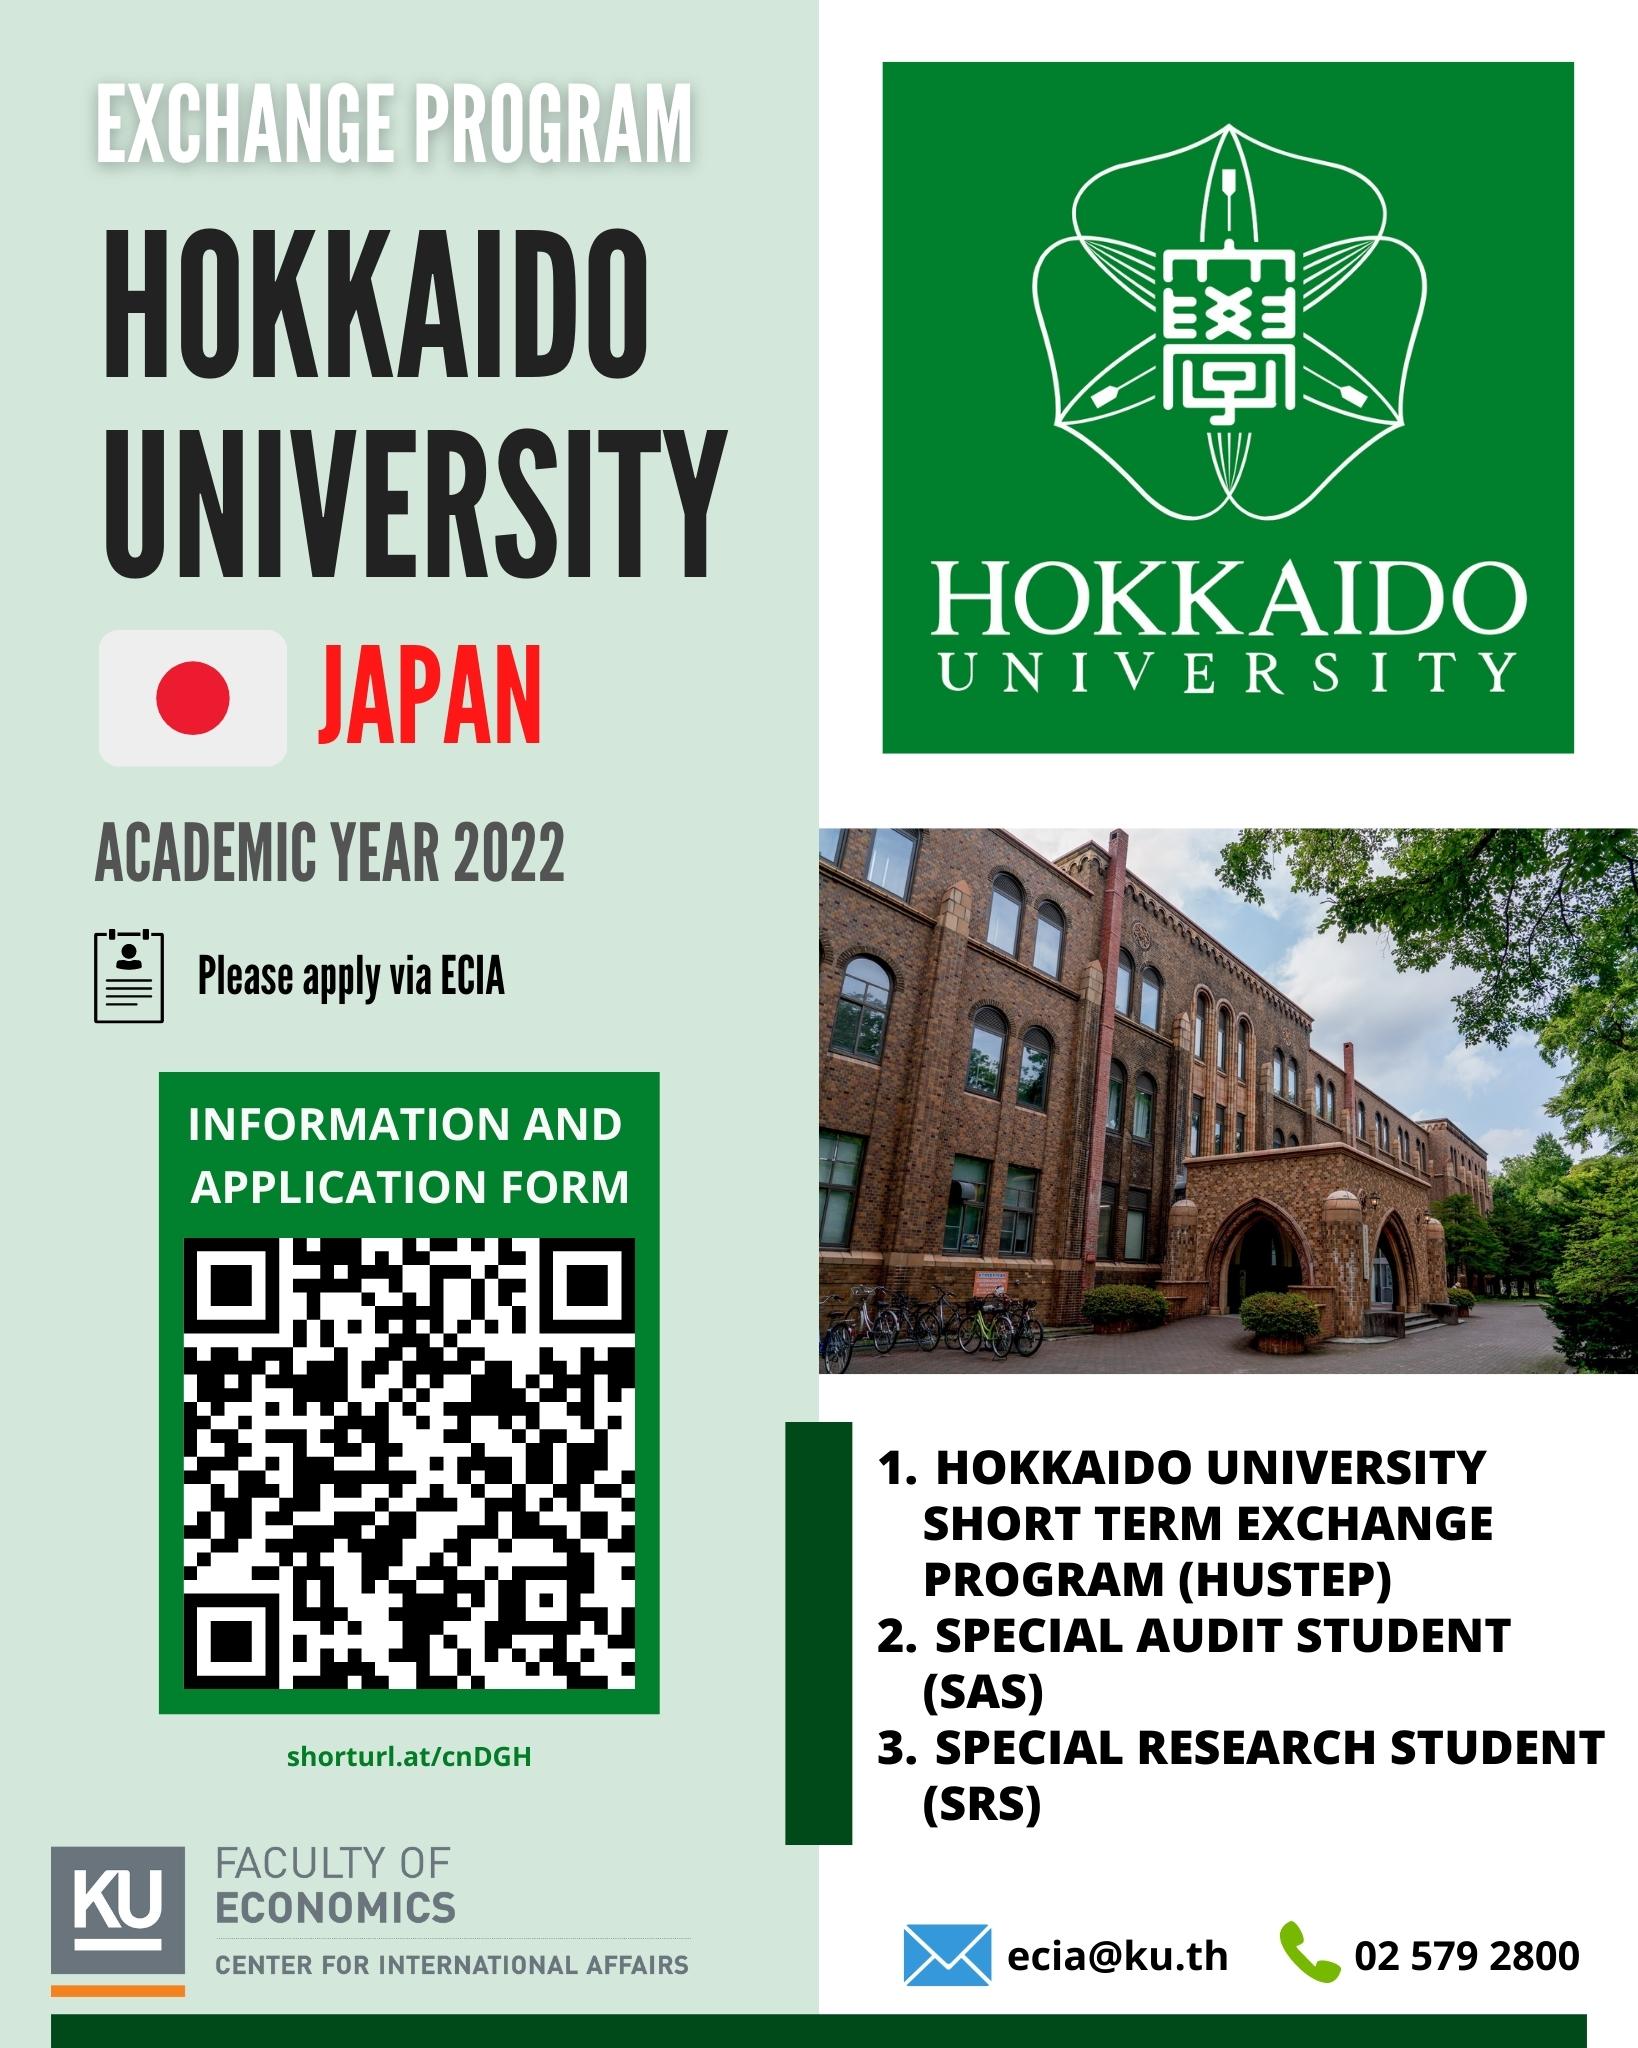 โครงการแลกเปลี่ยนนักศึกษา ภาคฤดูใบไม้ร่วง ประจำปี 2565 จาก Hokkaido University ประเทศญี่ปุ่น